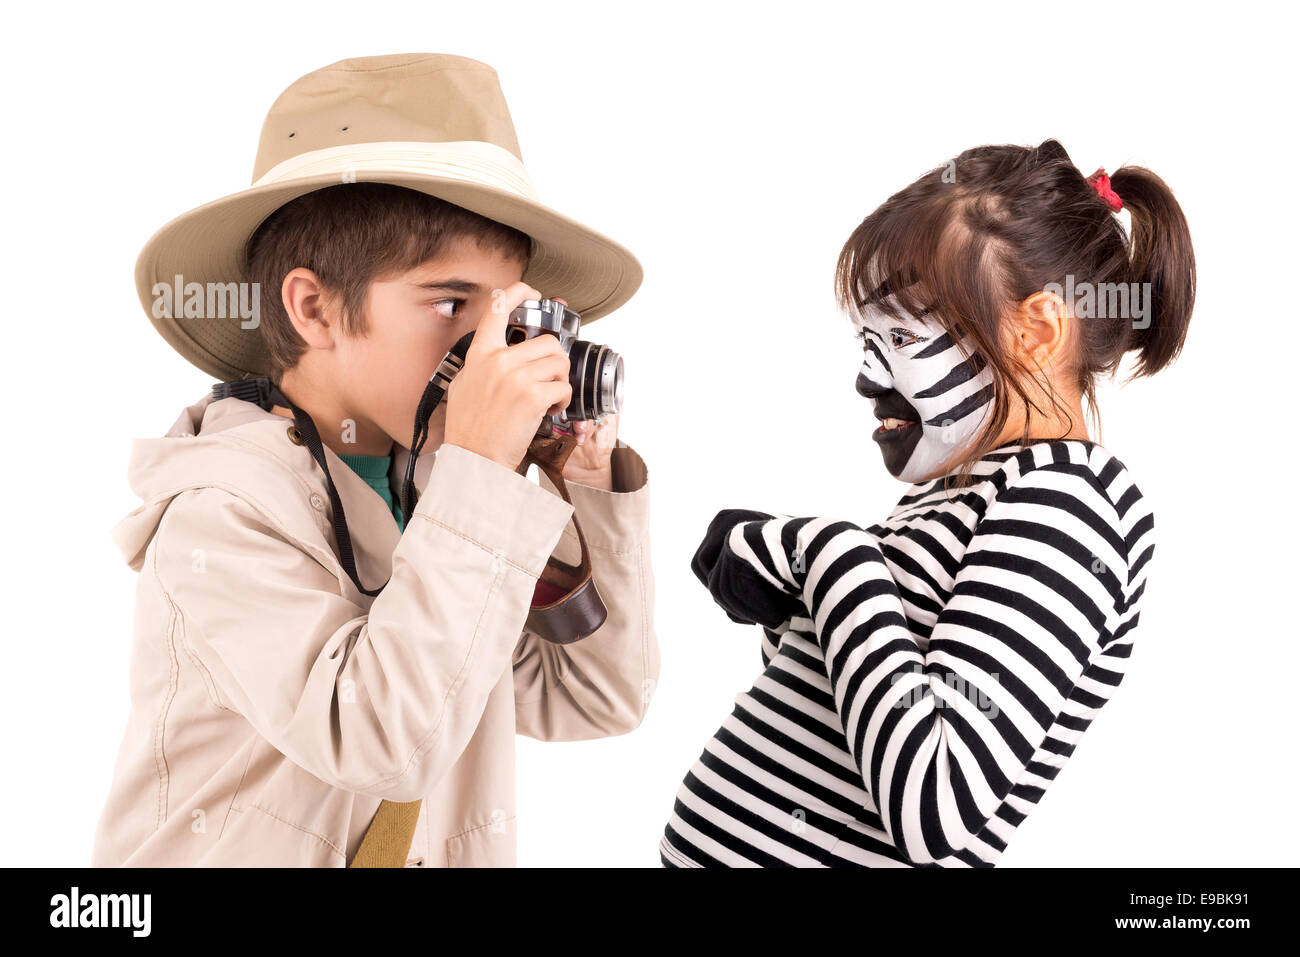 Jeune fille avec visage peint comme un zèbre et garçon explorer avec l'appareil photo Banque D'Images